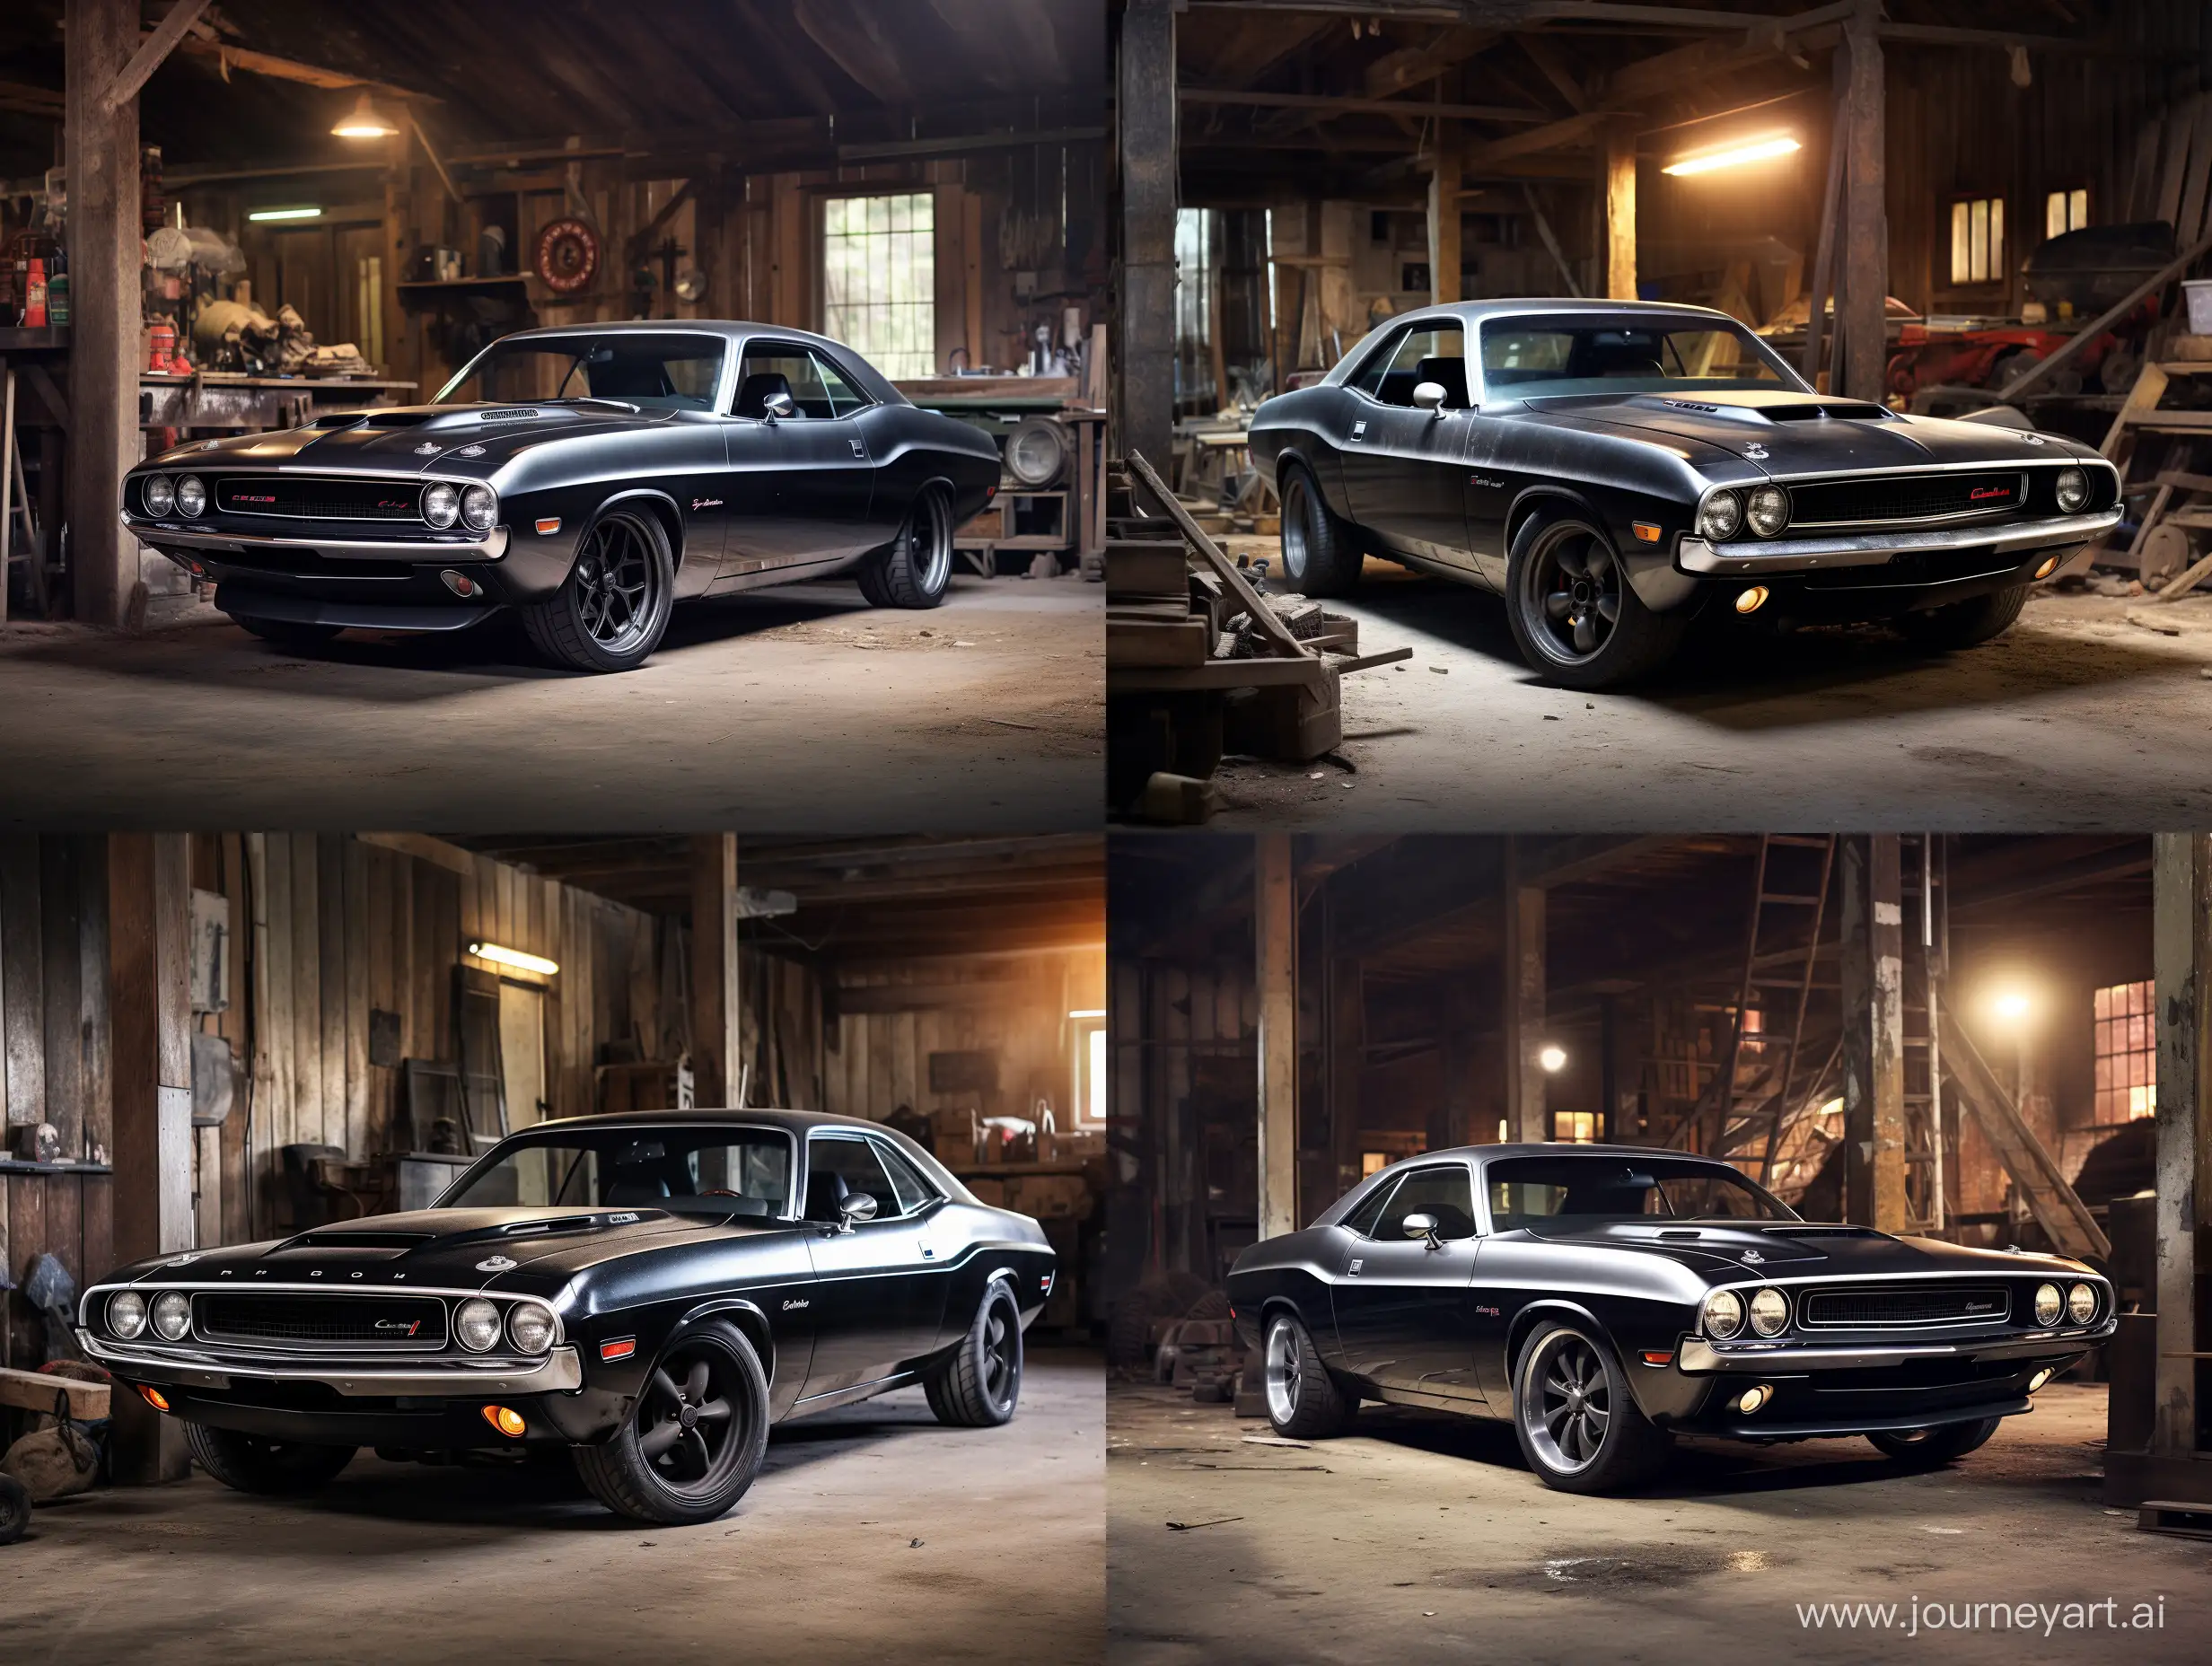 Vintage-Dodge-Challenger-in-Dark-Garage-Stunning-Album-Cover-Photo